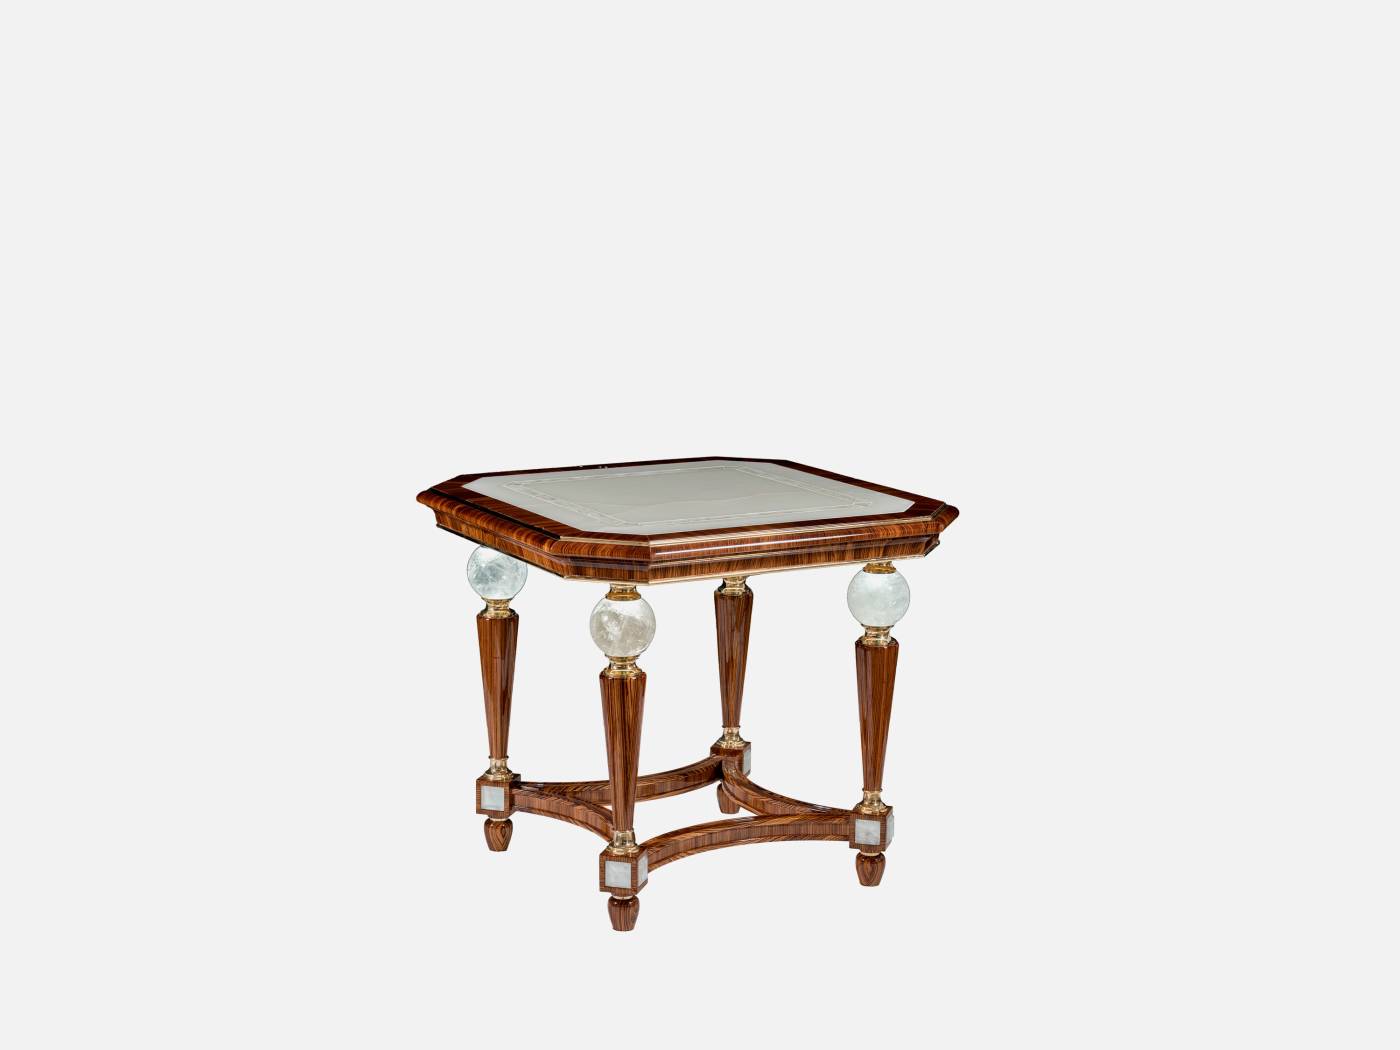 ART. 2077 – C.G. Capelletti Italian Luxury Classic Small tables. Made in Italy classic interior design